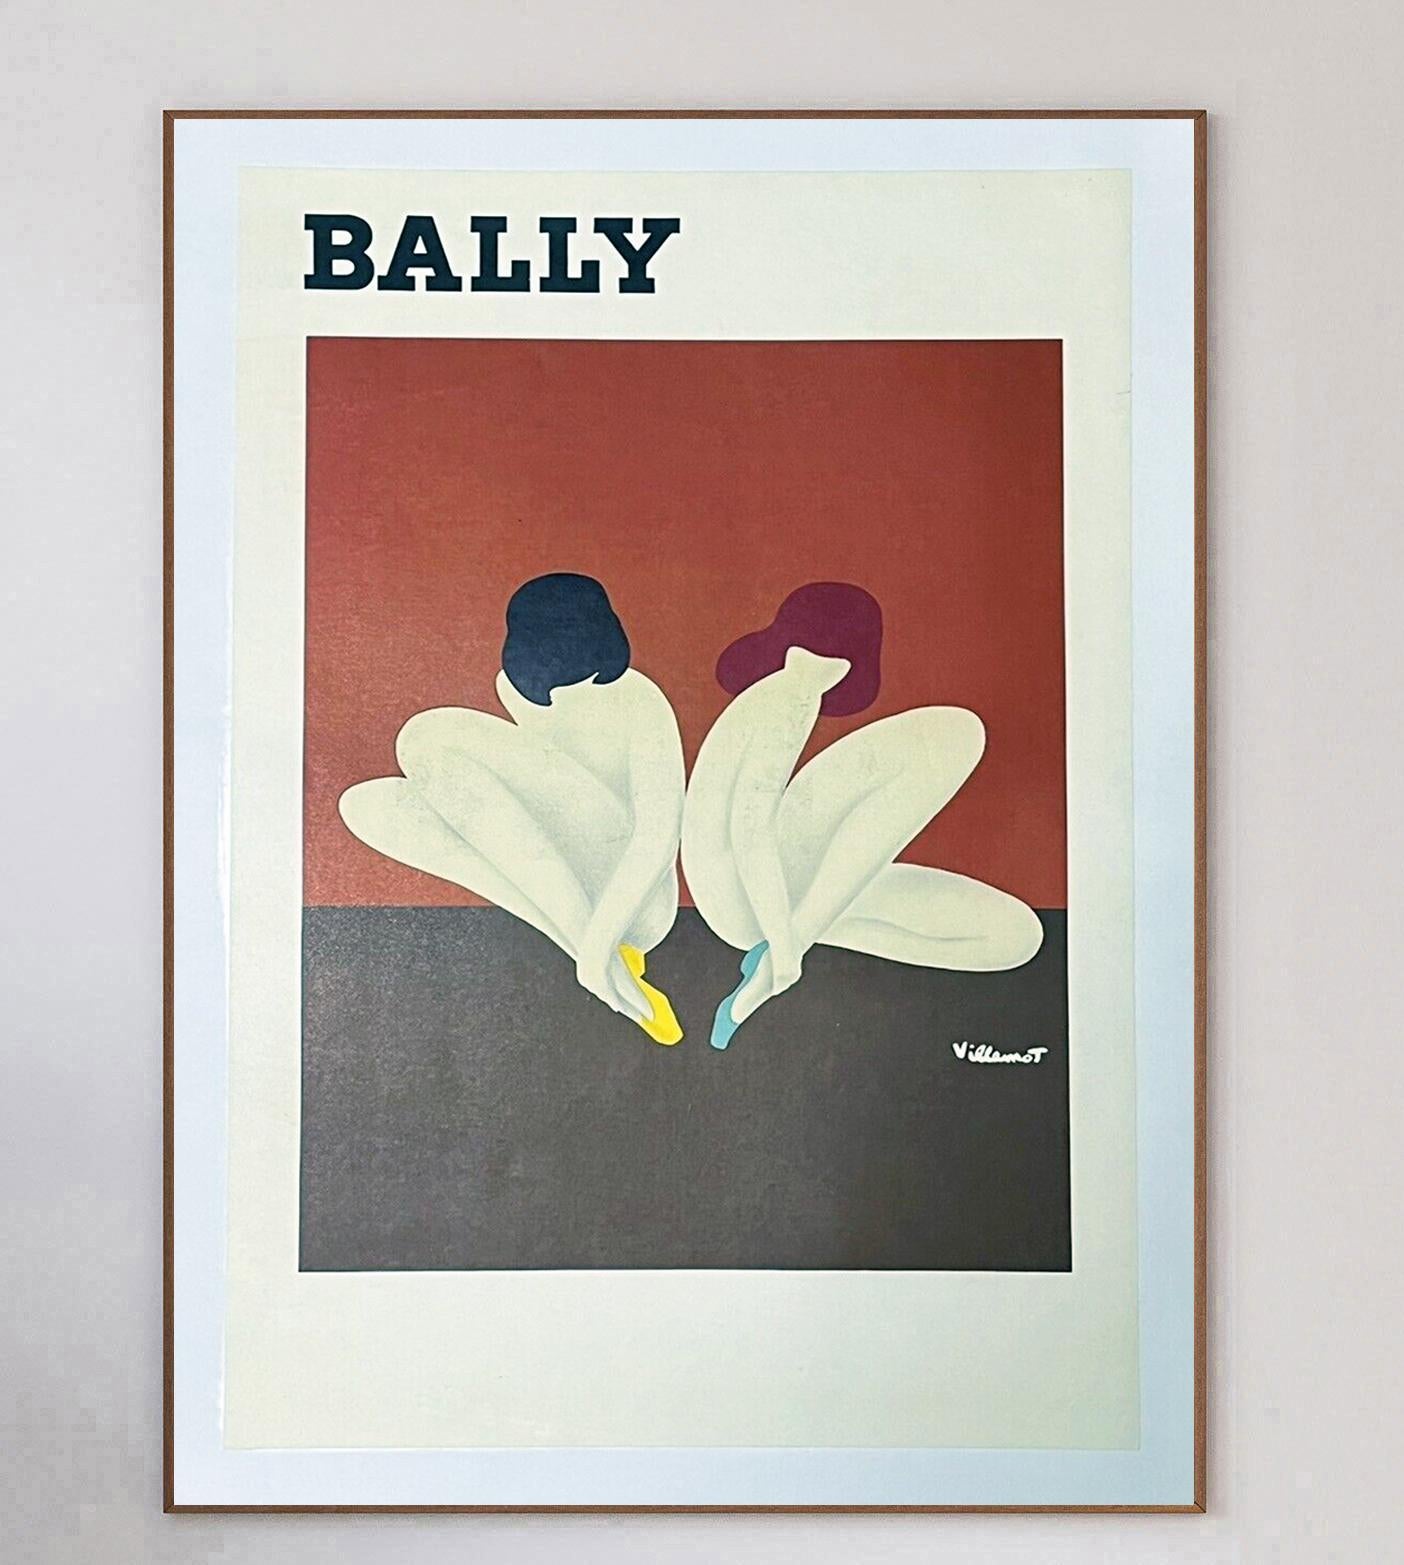 Die Kollaboration zwischen Bernard Villemot und Bally ist eines der kultigsten und begehrtesten Designs des 20. Jahrhunderts und zeigt den Übergang zwischen Werbung und bildender Kunst.

Der Schweizer Luxusschuhmacher arbeitete mit dem berühmten